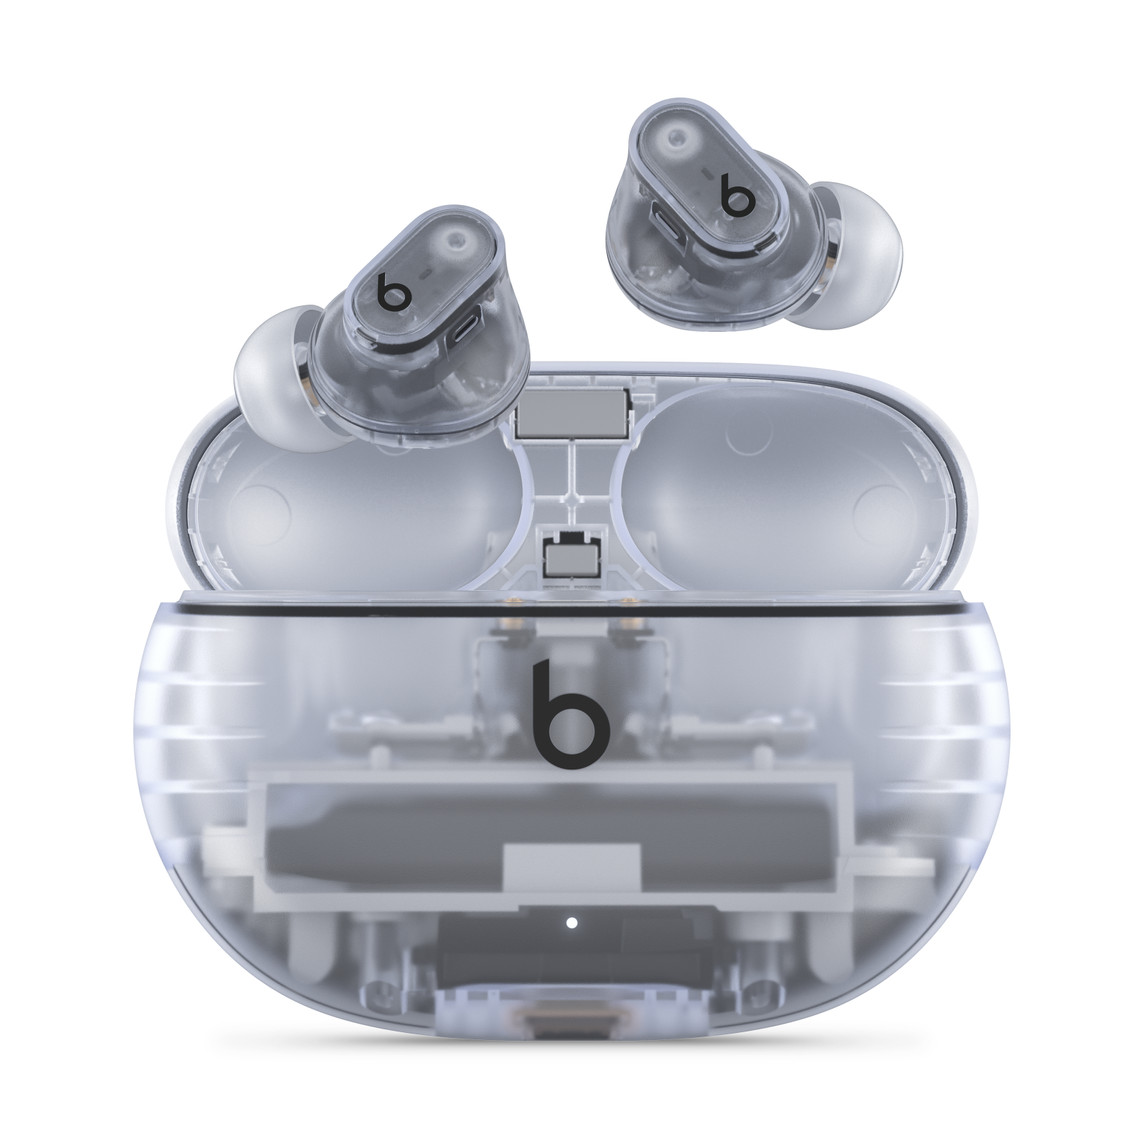 De echt draadloze Beats Studio Buds +-oortjes met ruisonderdrukking in transparante uitvoering met Beats-logo, boven de handige oplaadcase.